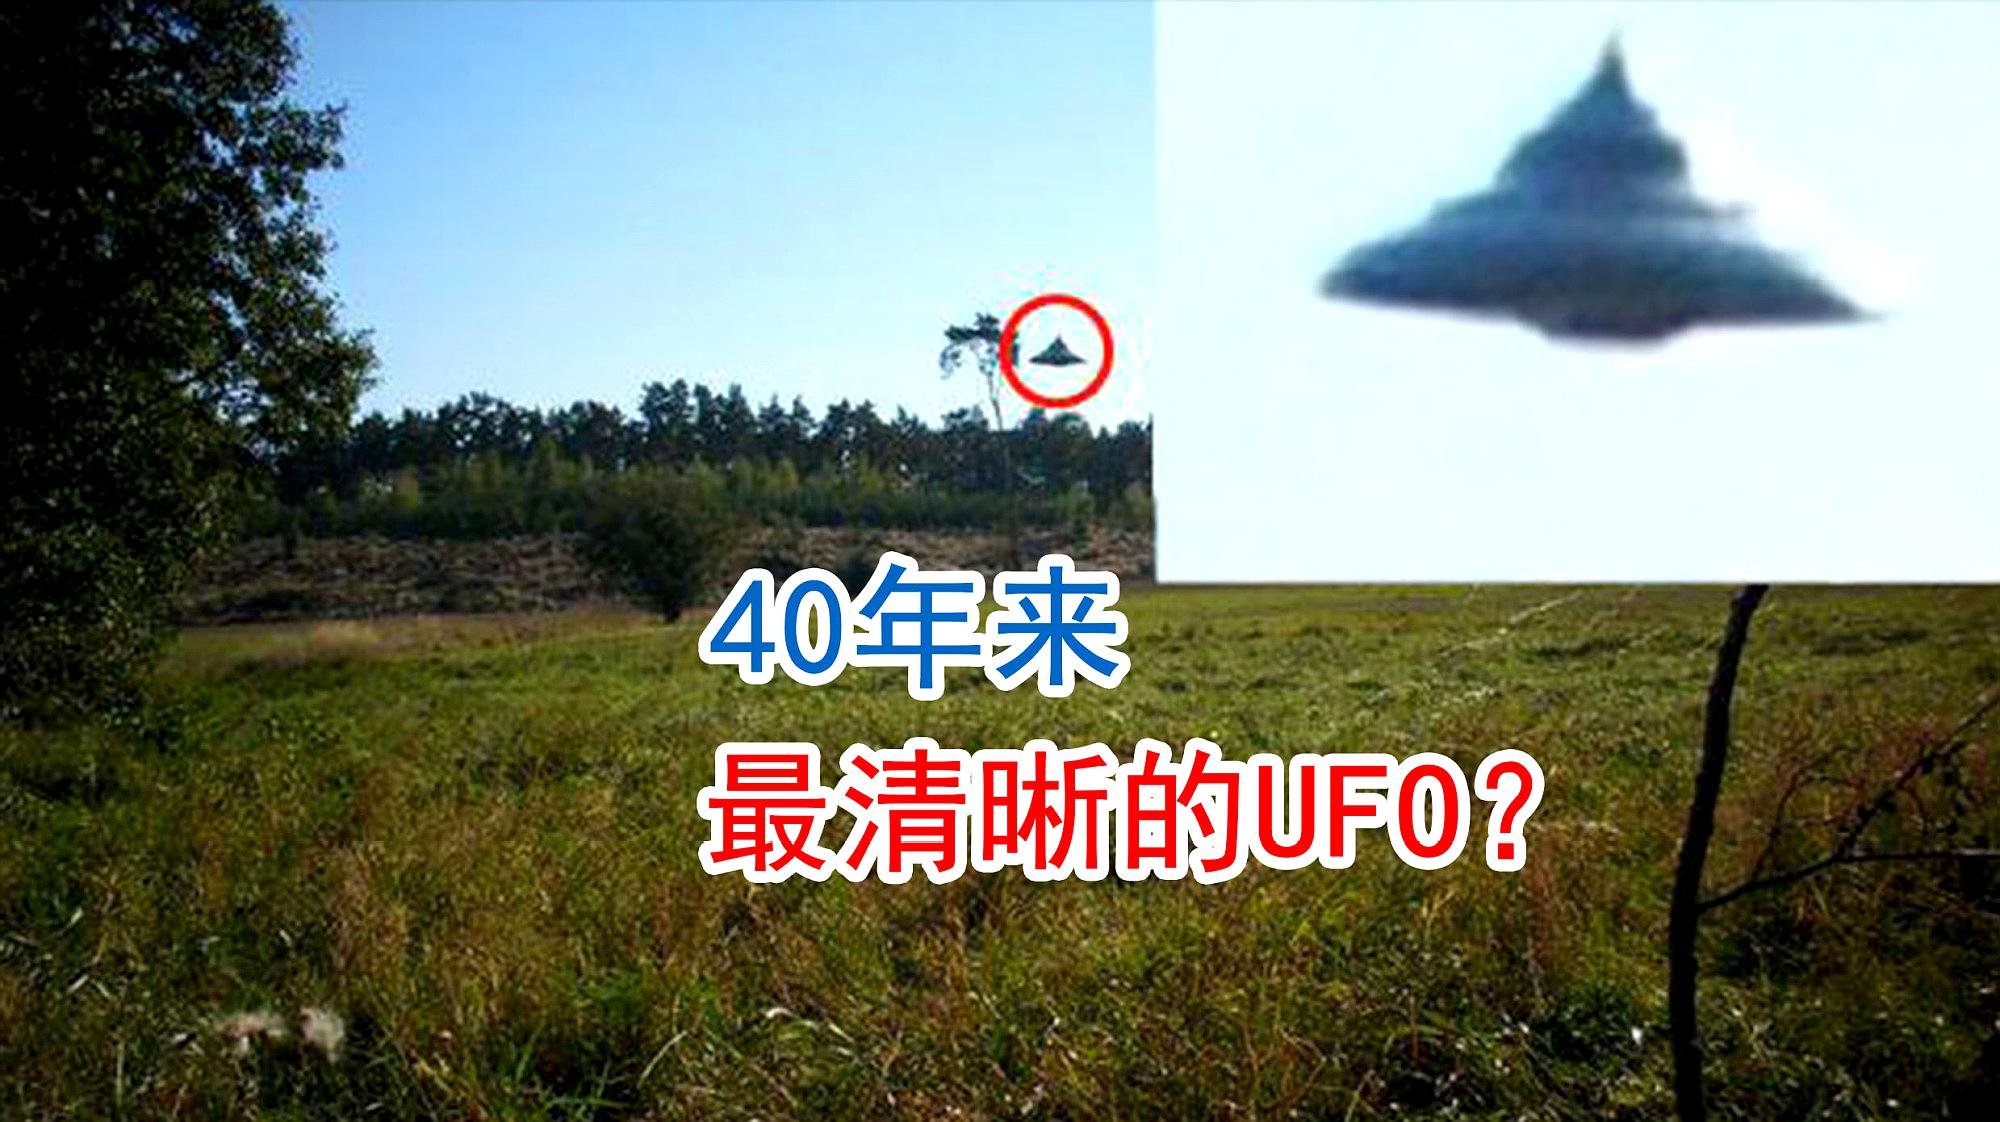 4ufo事件四:美国公布ufo的视频,并且证实了视频的真实性.